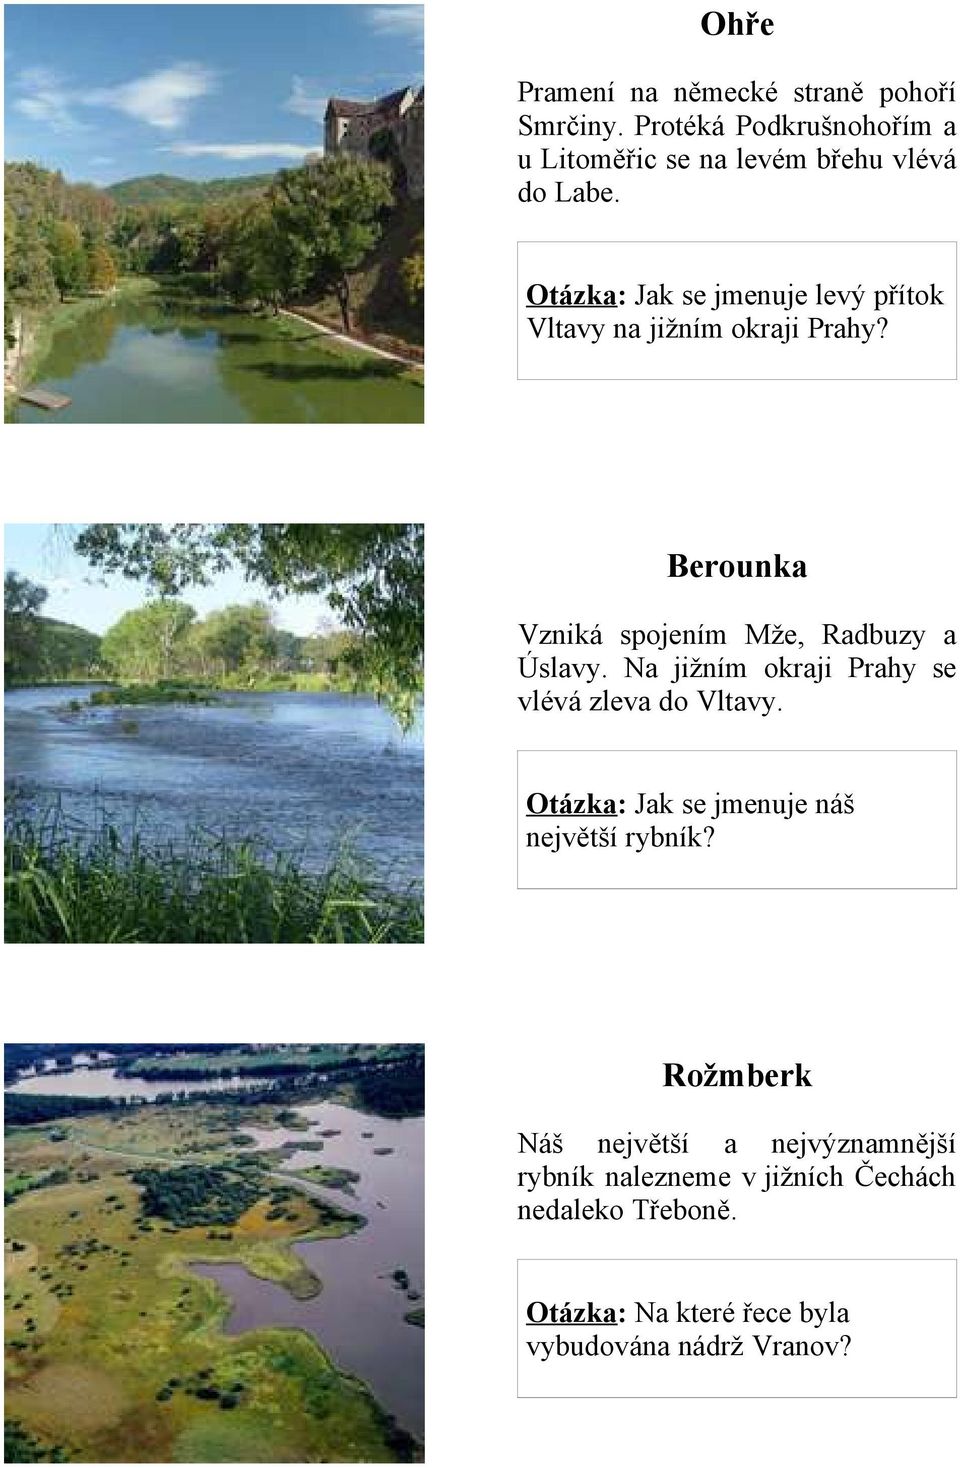 Na jižním okraji Prahy se vlévá zleva do Vltavy. Otázka: Jak se jmenuje náš největší rybník?